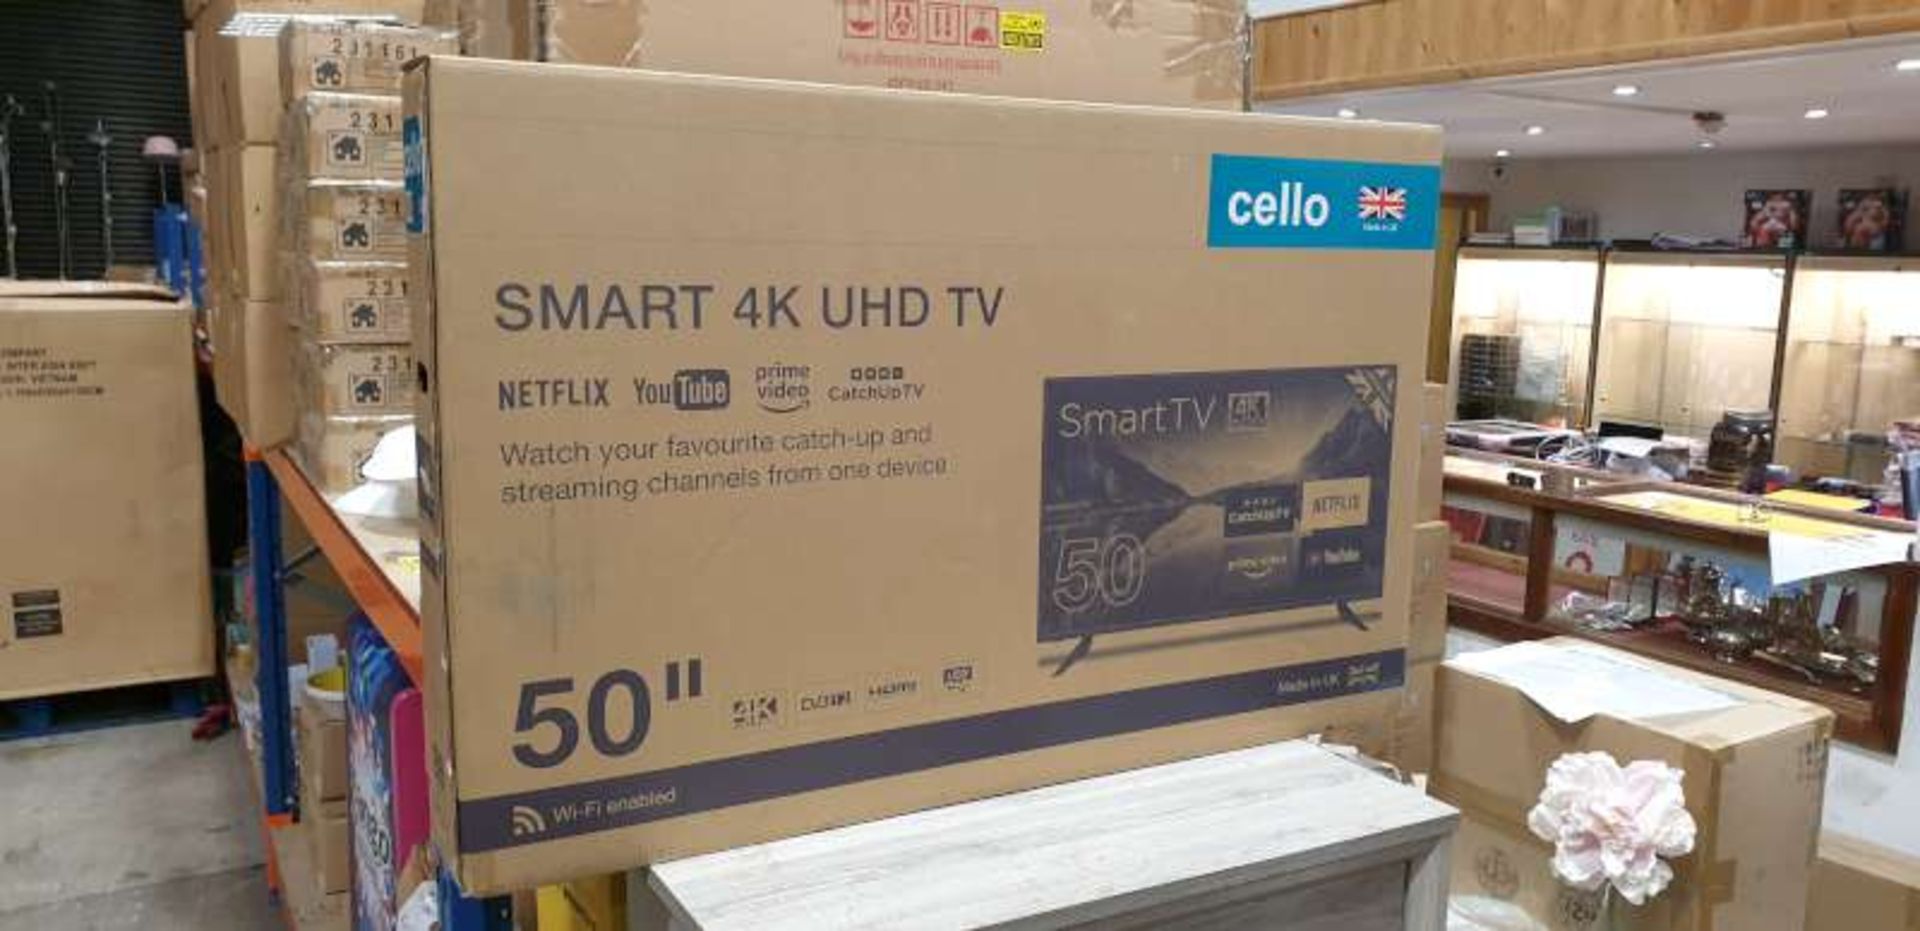 BRAND NEW BOXED CELLO 50" SMART 4K UHD TELEVISION